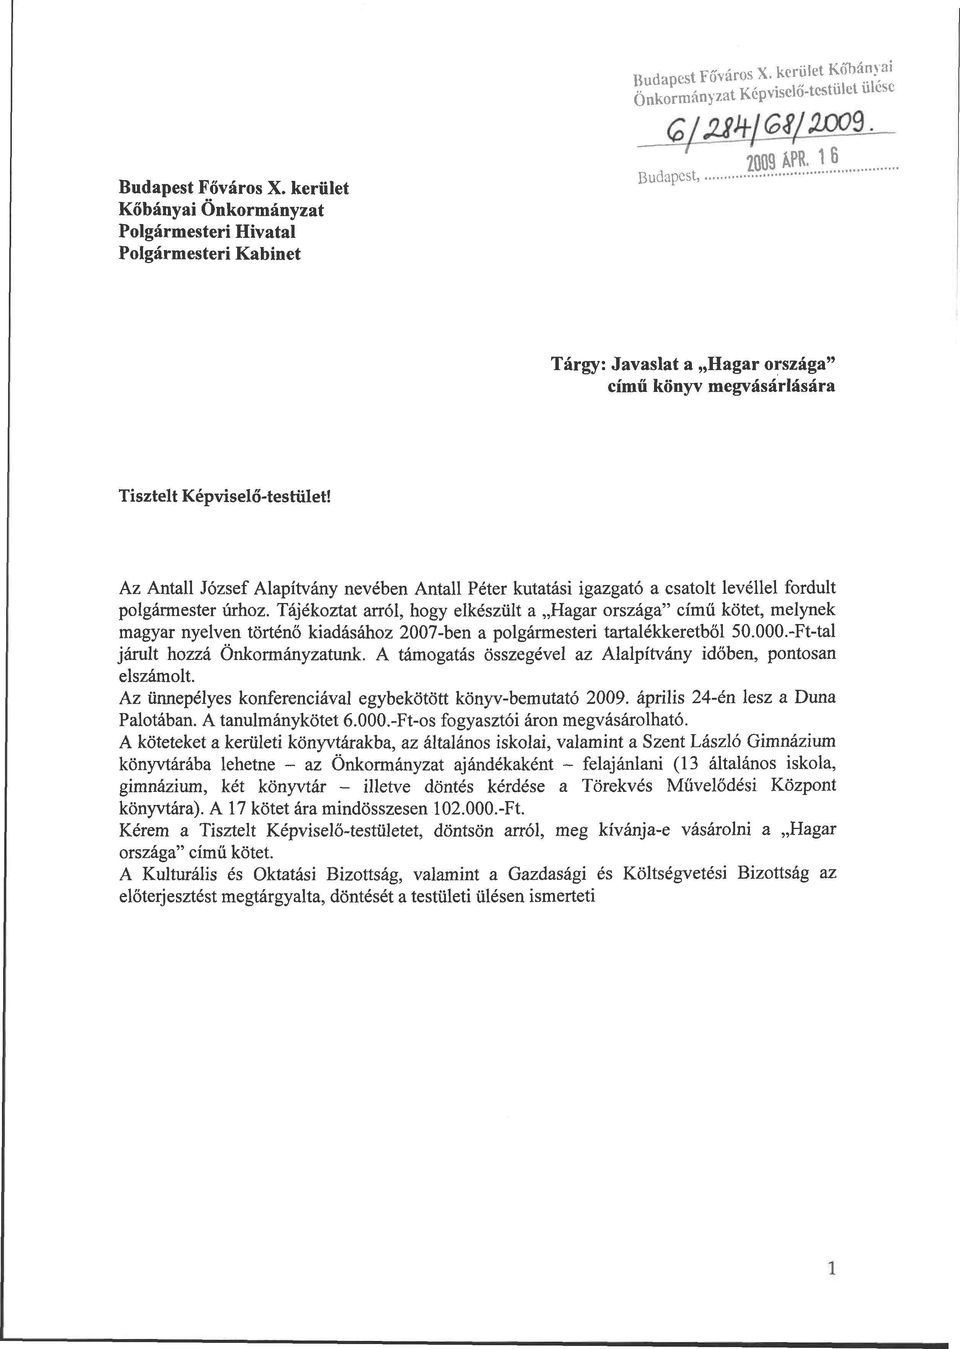 Az Antall József Alapítvány nevében Antall Péter kutatási igazgató a csatolt levéllel fordult polgármester úrhoz.